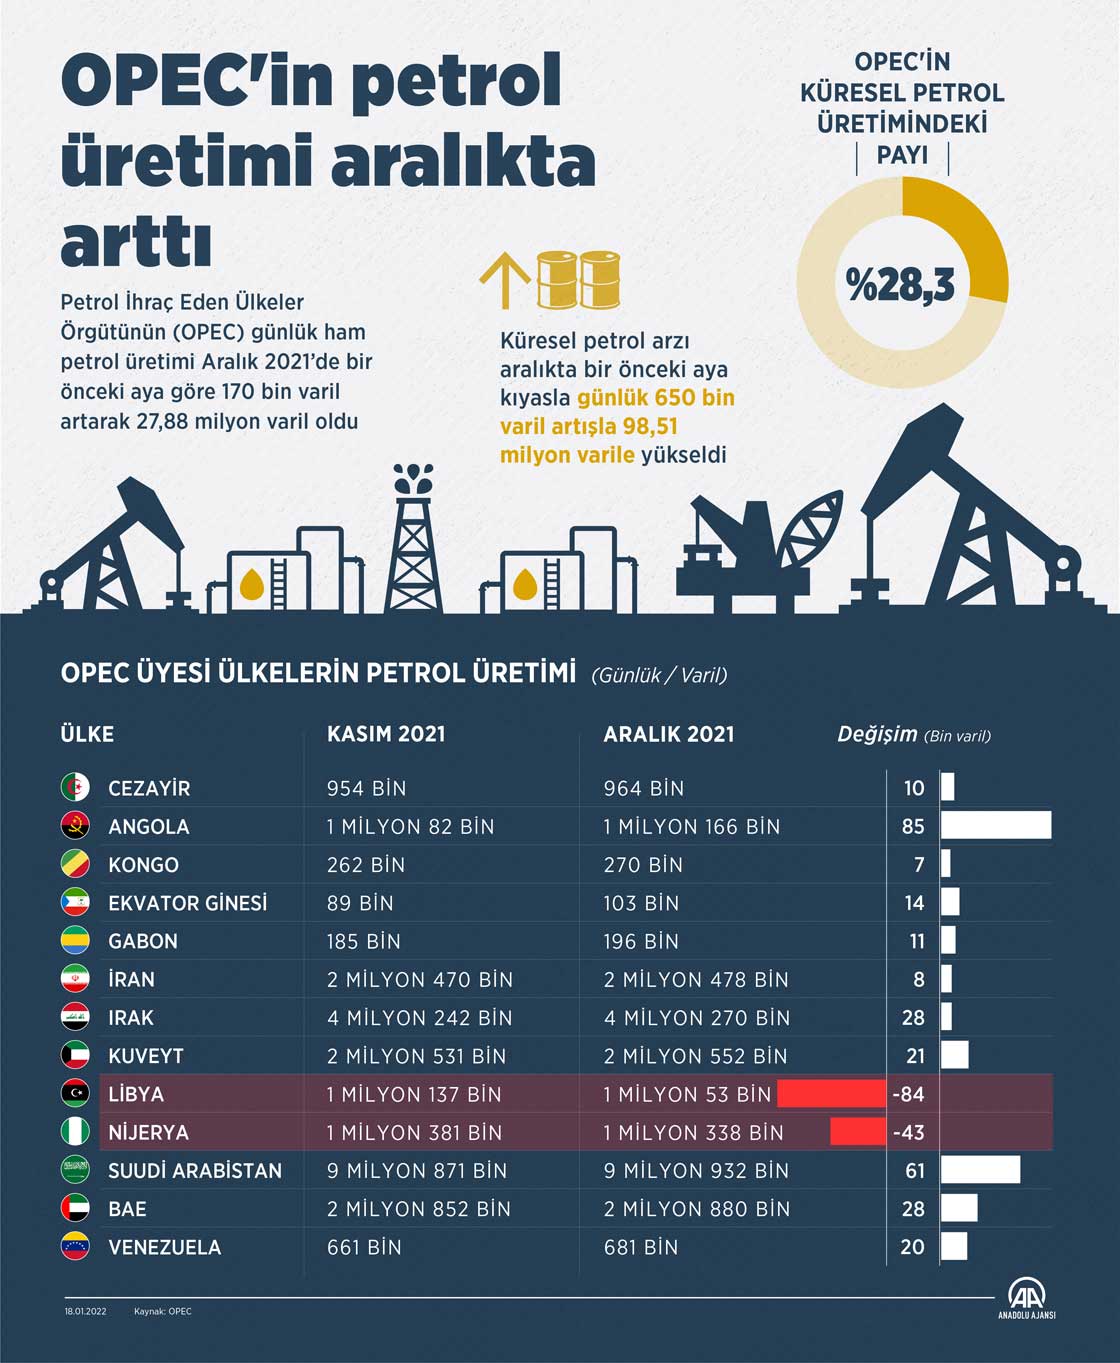 OPEC'in petrol üretimi aralıkta arttı